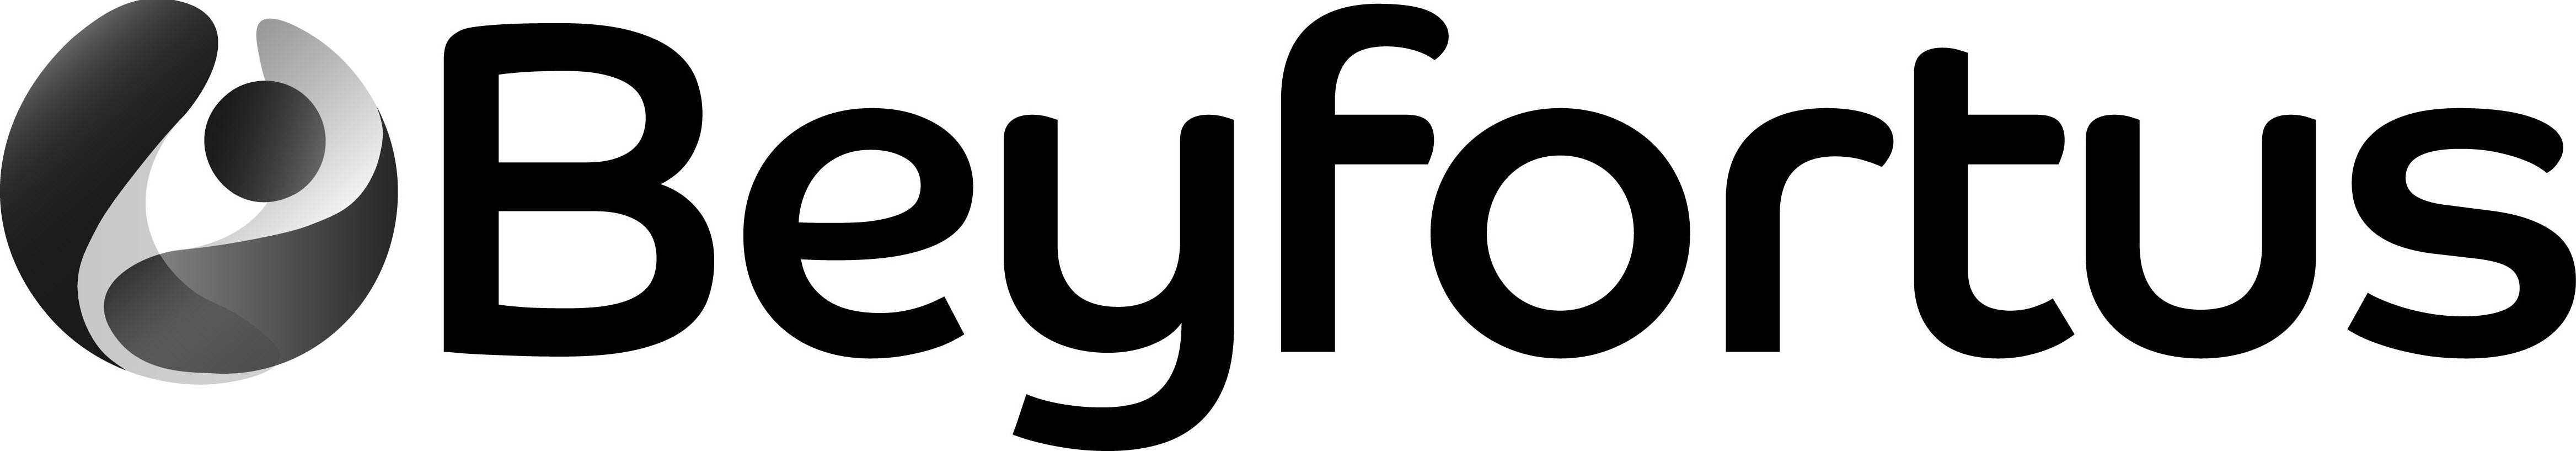 Trademark Logo BEYFORTUS AND LOGO